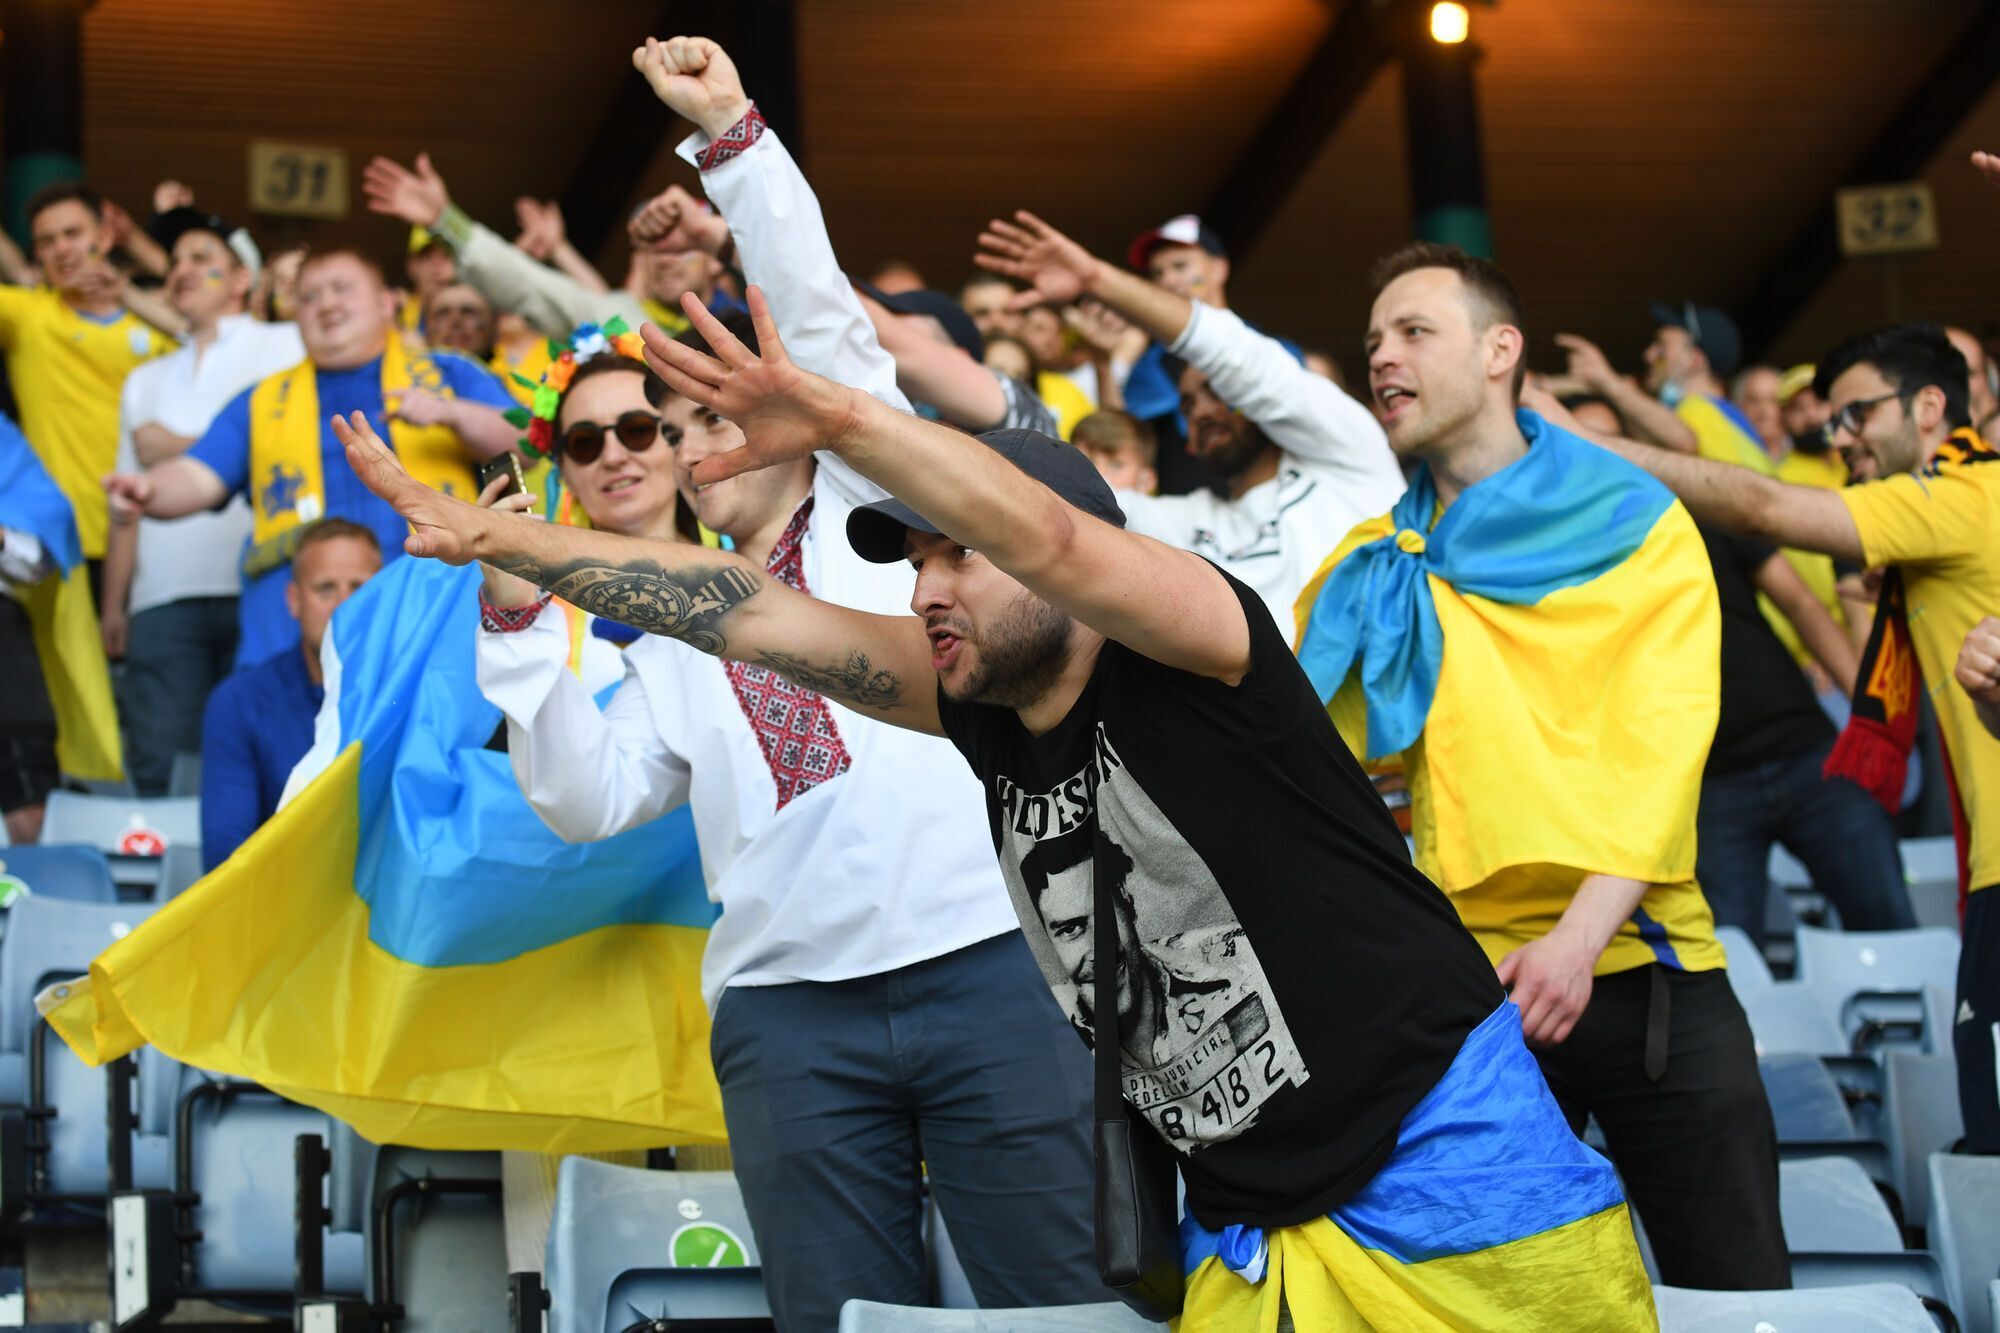 Українські фанати